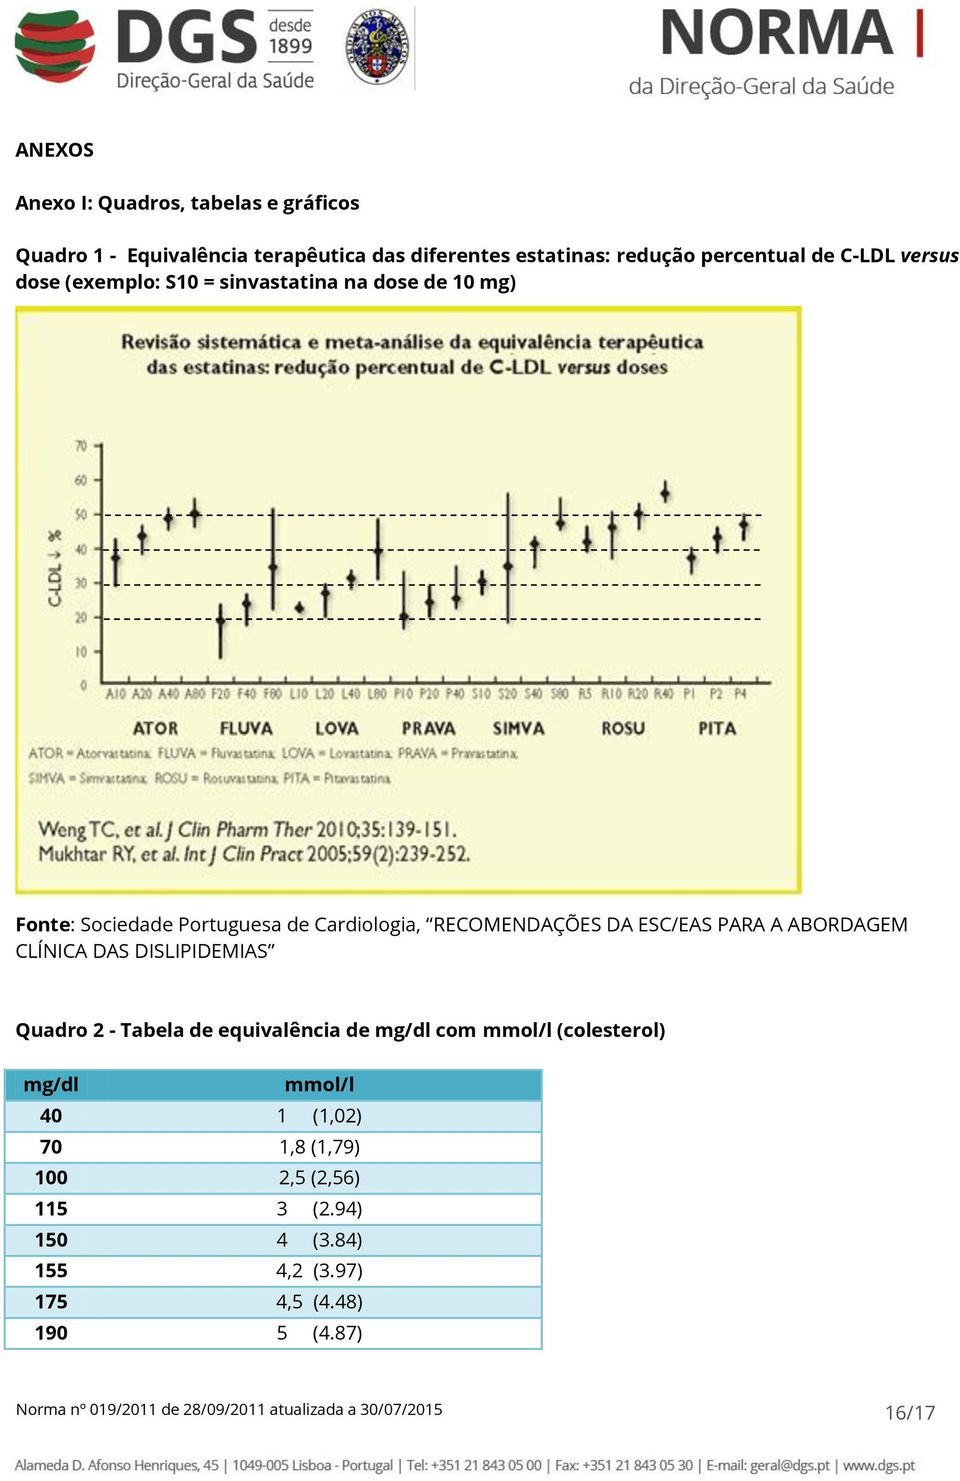 ABORDAGEM CLÍNICA DAS DISLIPIDEMIAS Quadro 2 - Tabela de equivalência de mg/dl com mmol/l (colesterol) mg/dl mmol/l 40 1 (1,02) 70 1,8